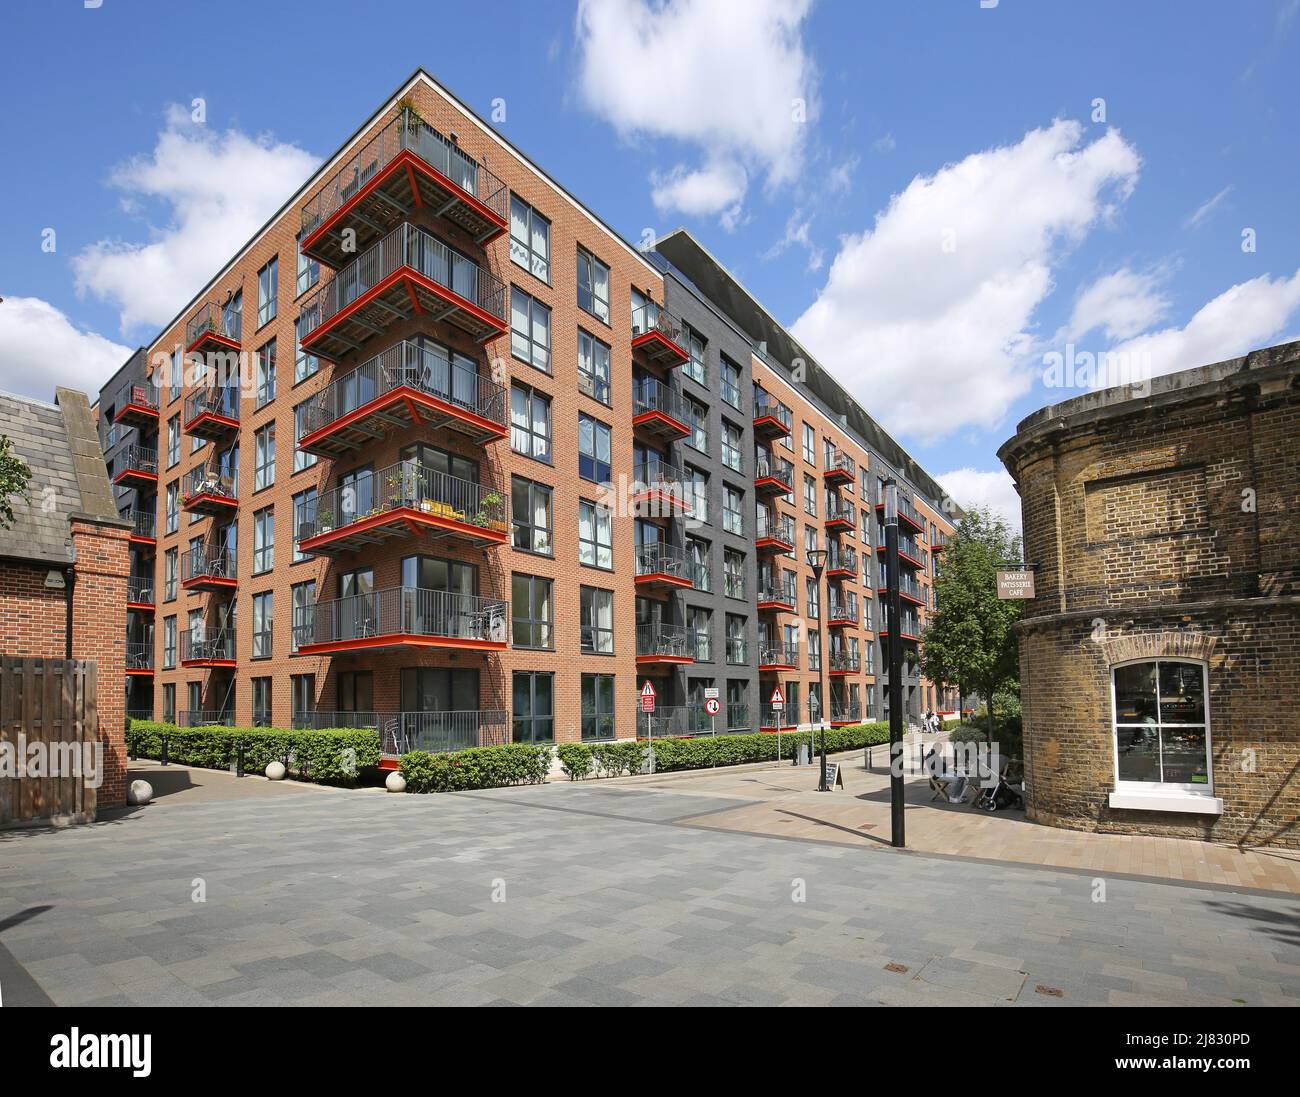 Nouveau développement résidentiel sur One Street à Woolwich, dans le sud-est de Londres, au Royaume-Uni. Nouveaux appartements dans les bâtiments victoriens historiques. Banque D'Images